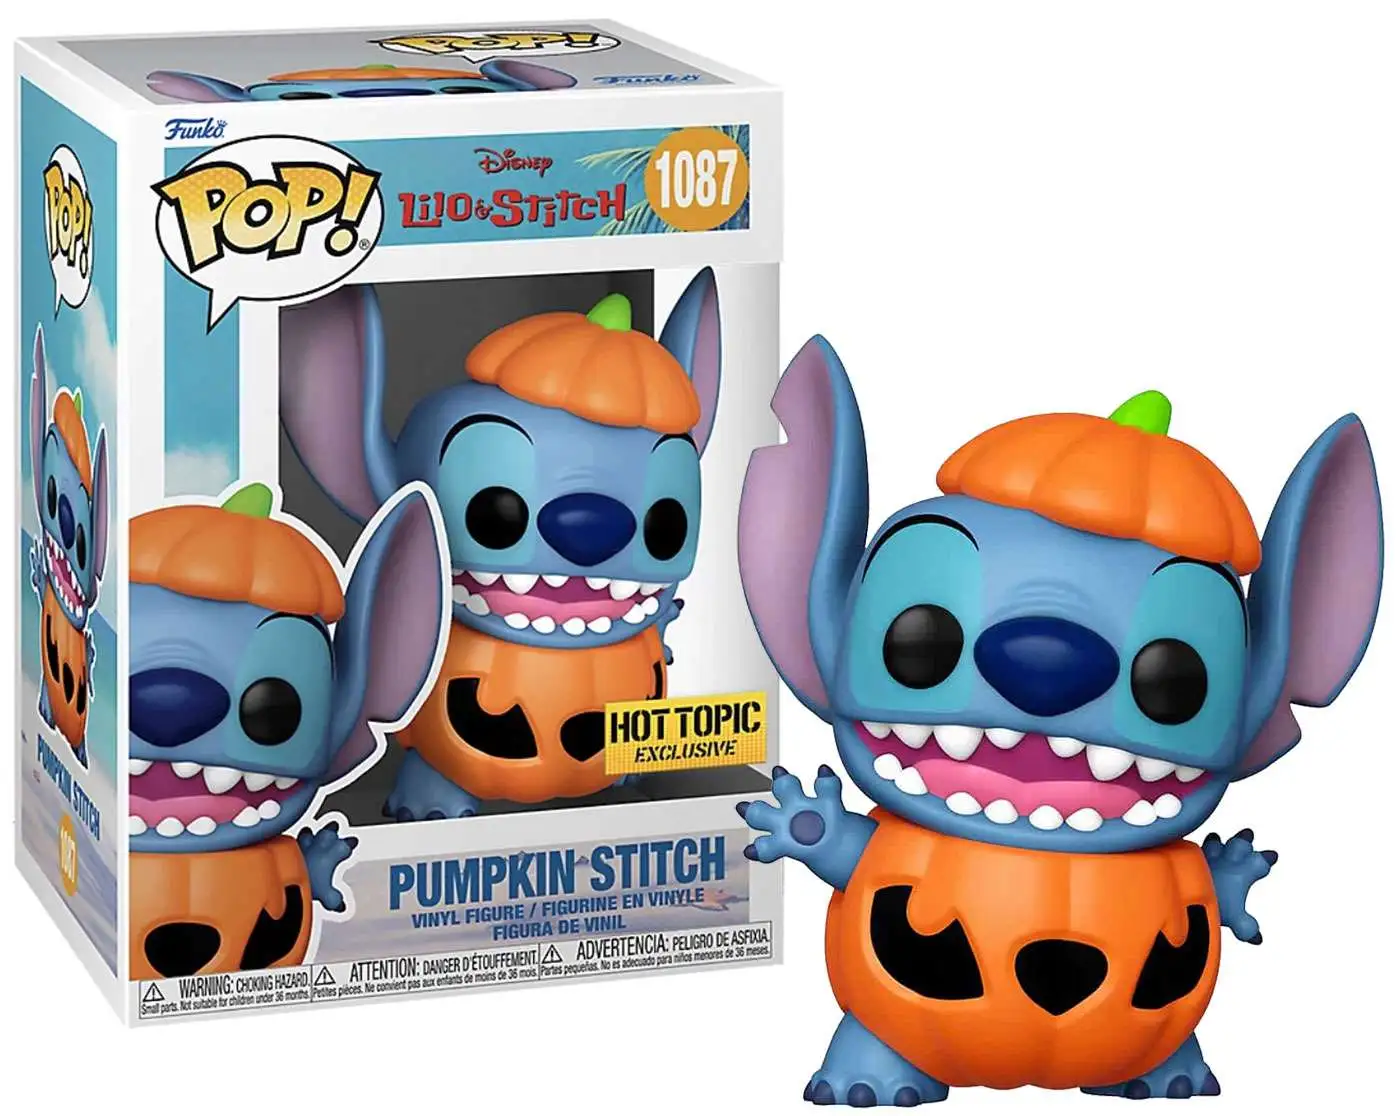 Overweldigend middelen Additief Funko Disney Lilo Stitch POP Disney Pumpkin Stitch Exclusive Vinyl Figure  1087 - ToyWiz